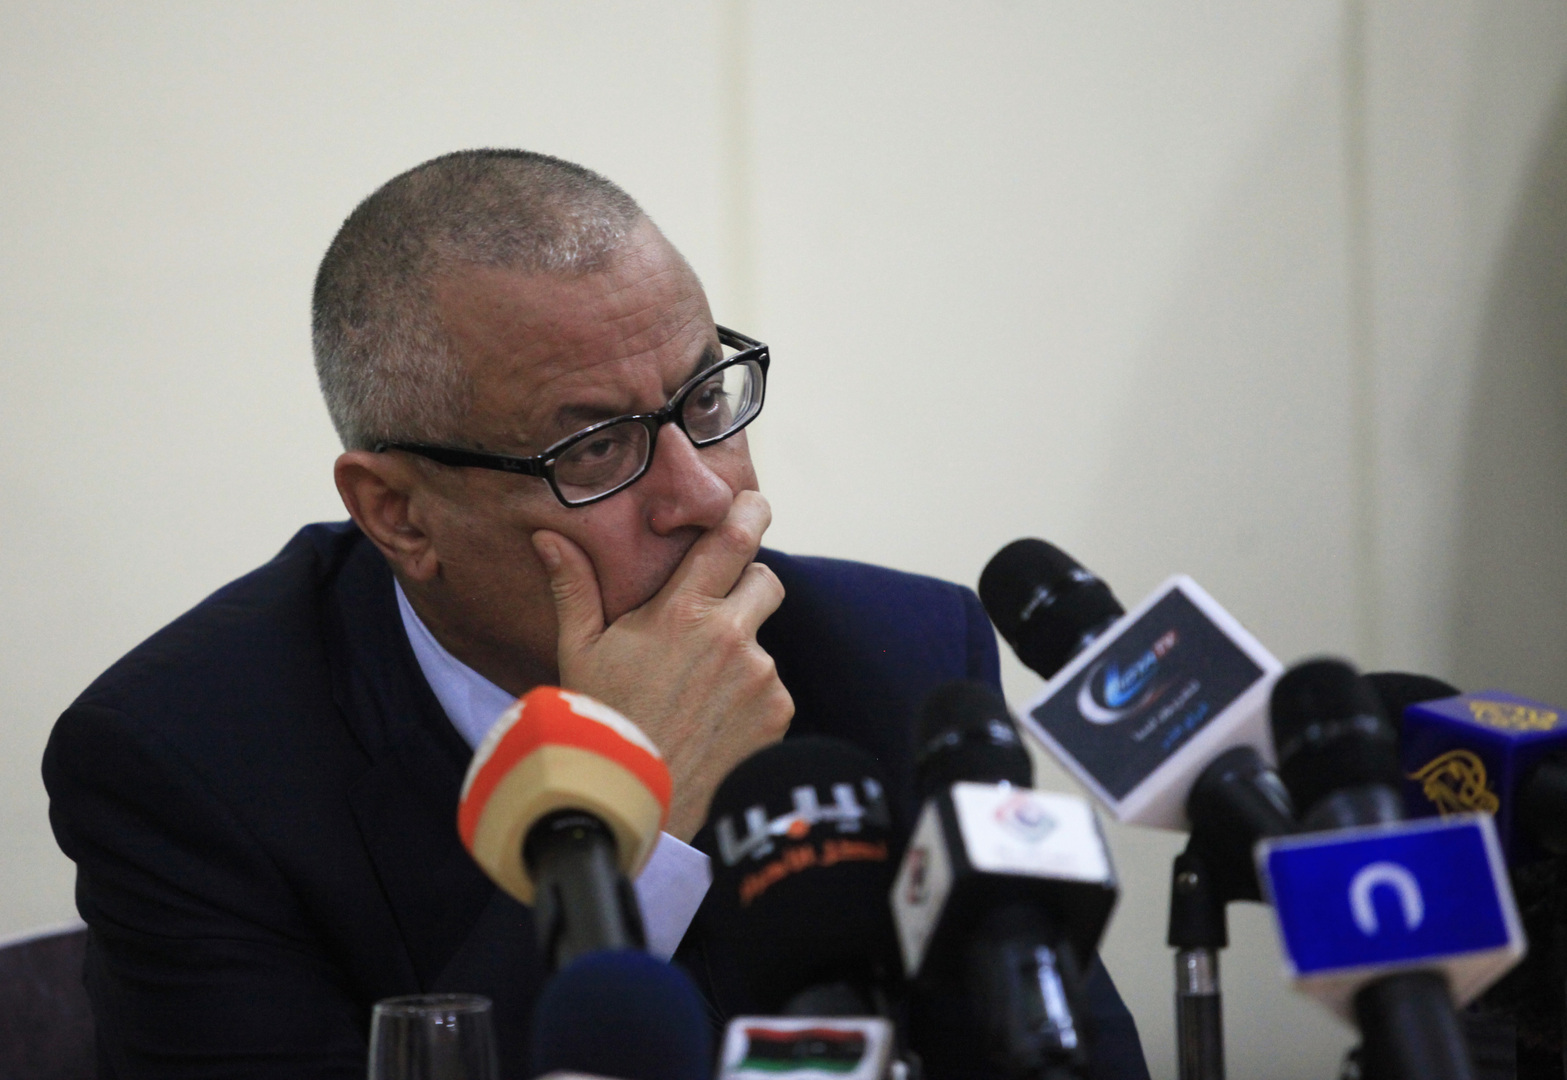 على زيدان يقدم مستندات ترشحه للانتخابات الرئاسية الليبية